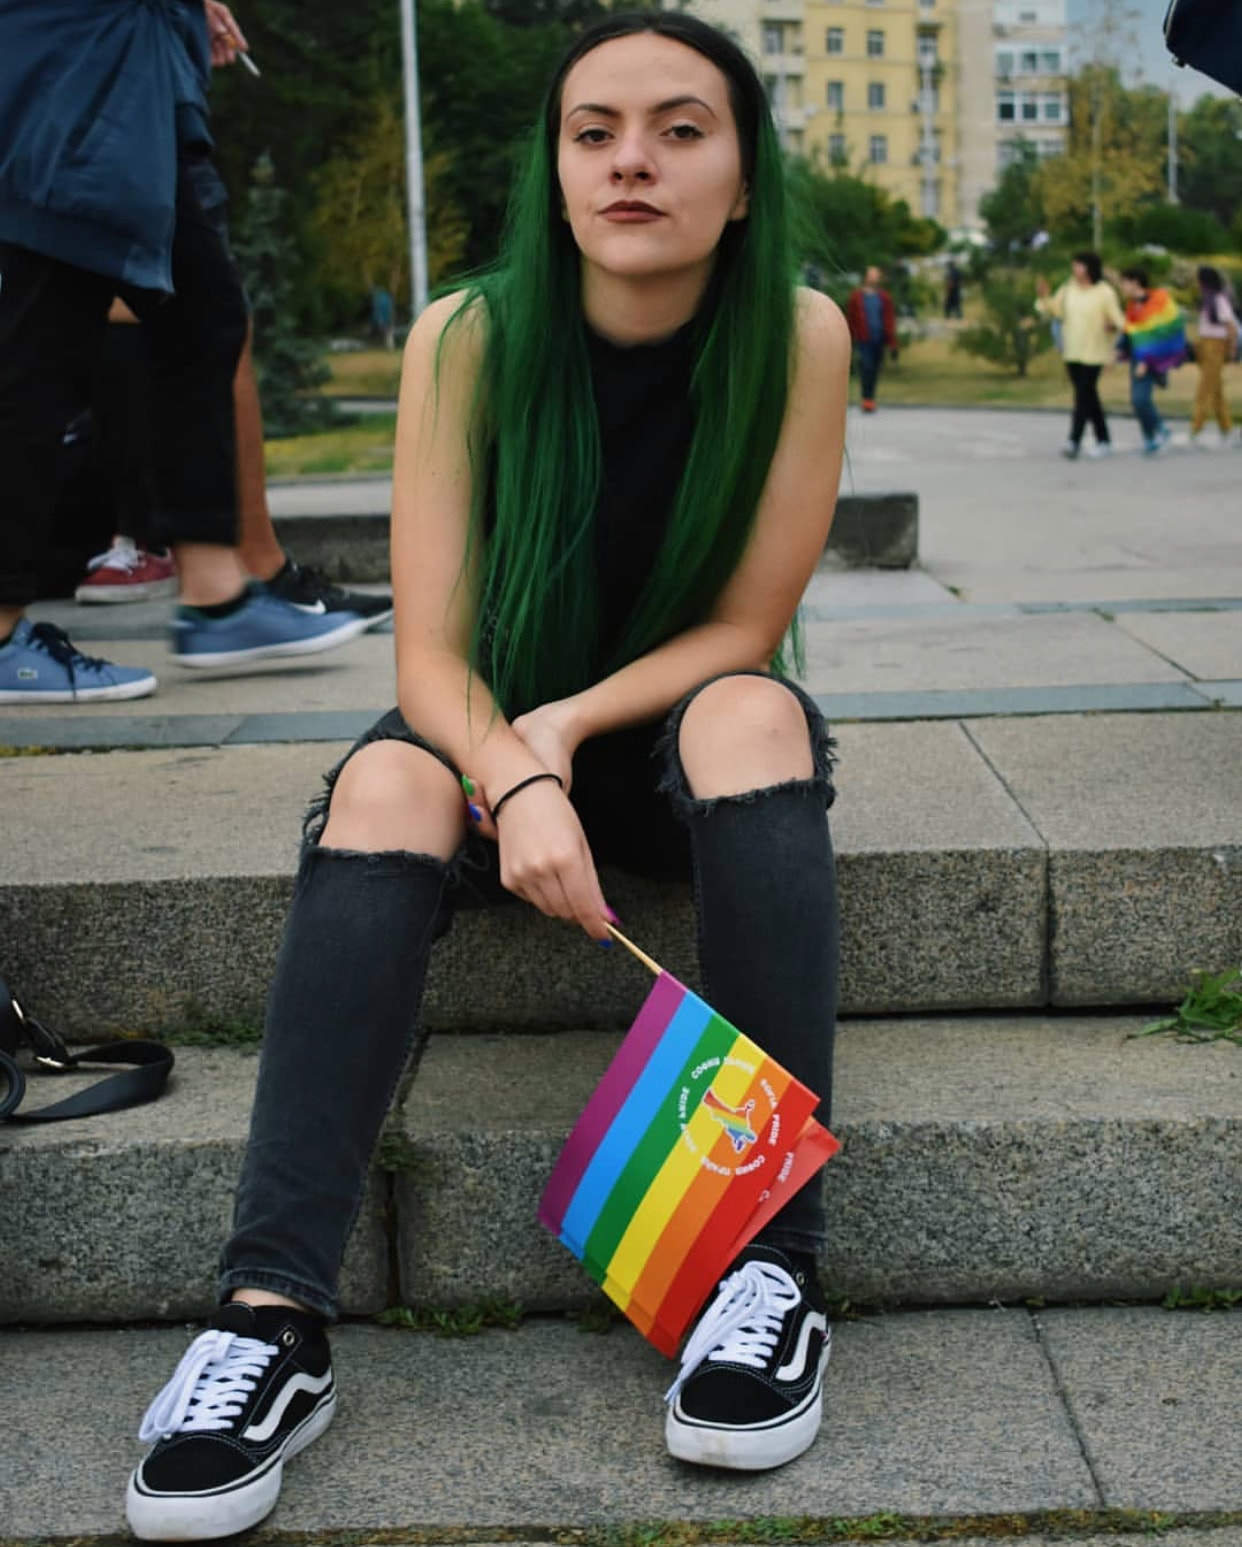 A girl posing with the rainbow flag